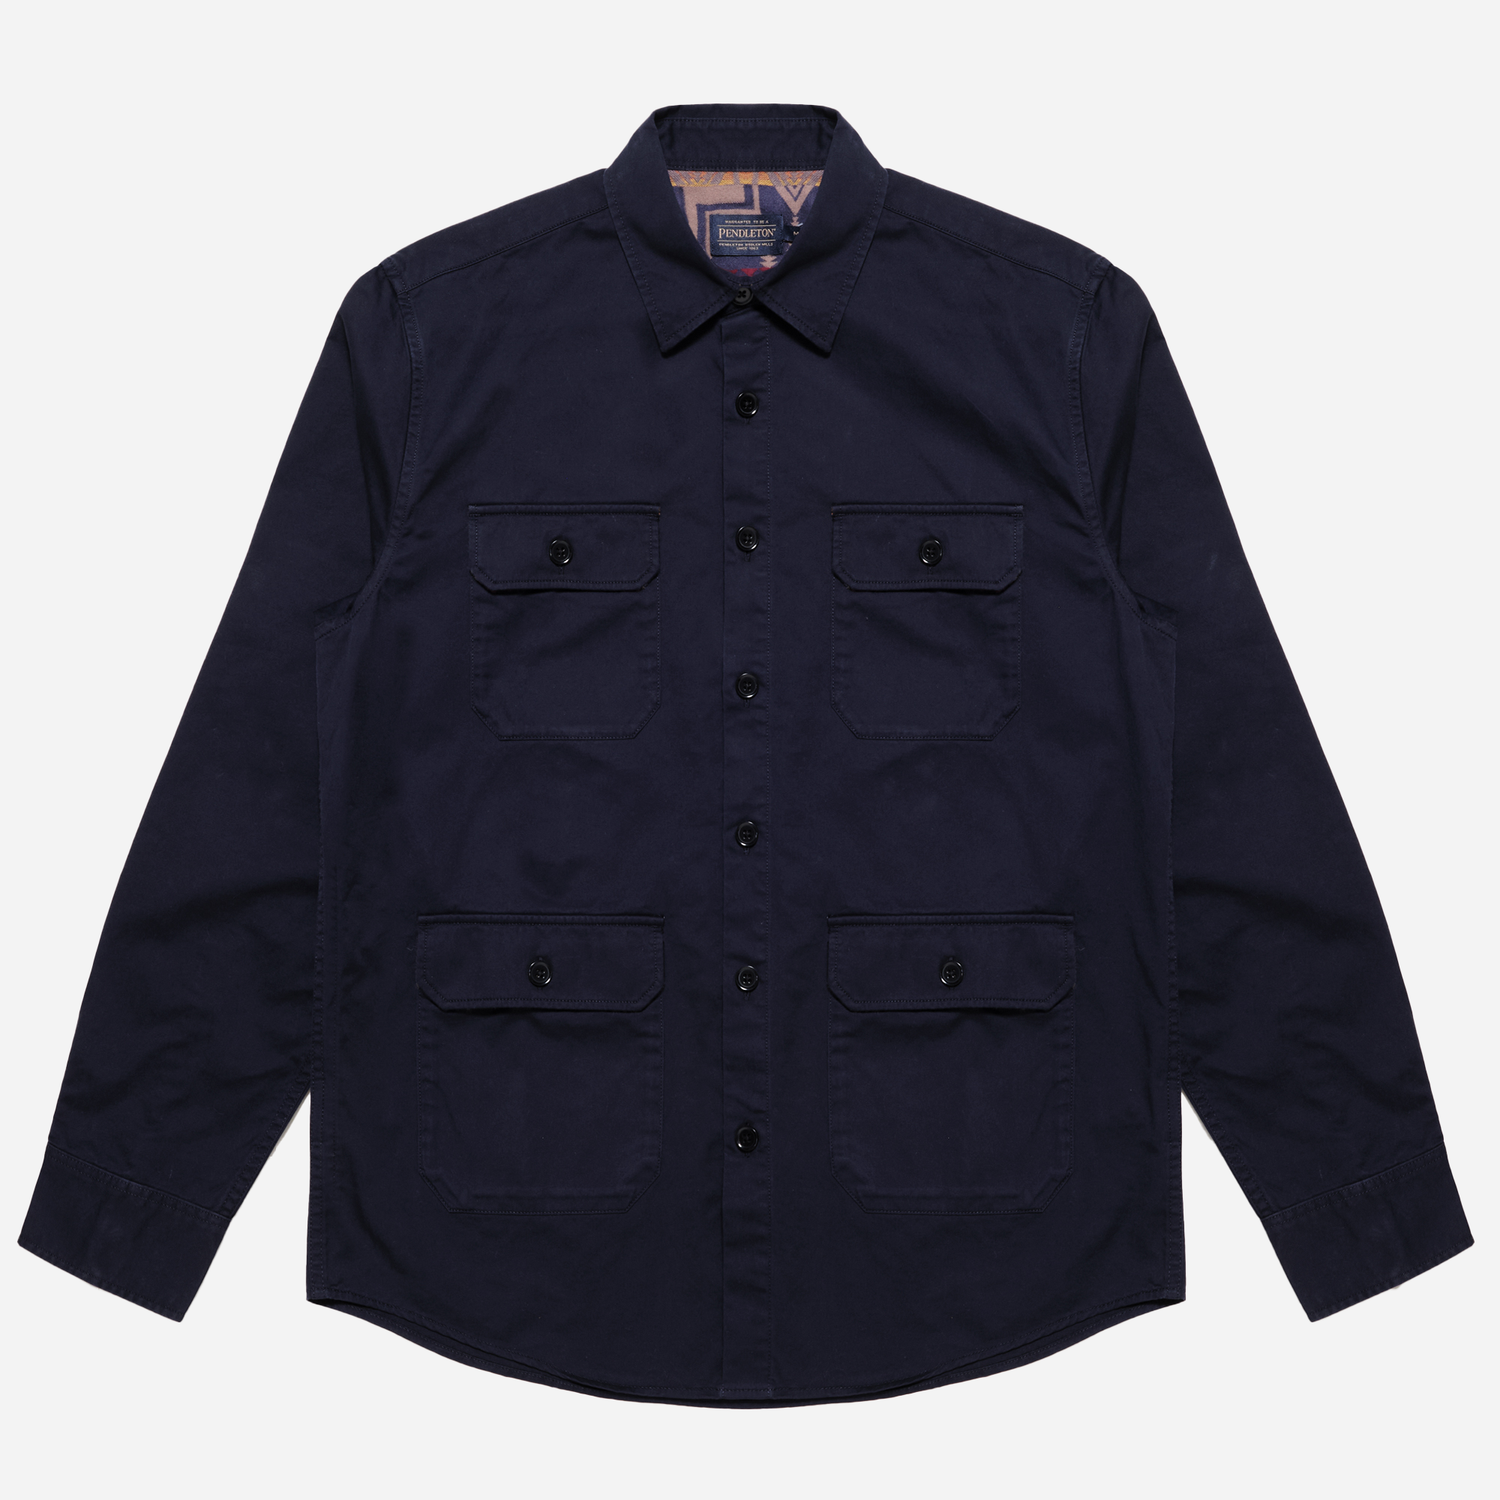 Patchwork Explorer Shirt (The Harding Capsule) – Marineblau/Harding